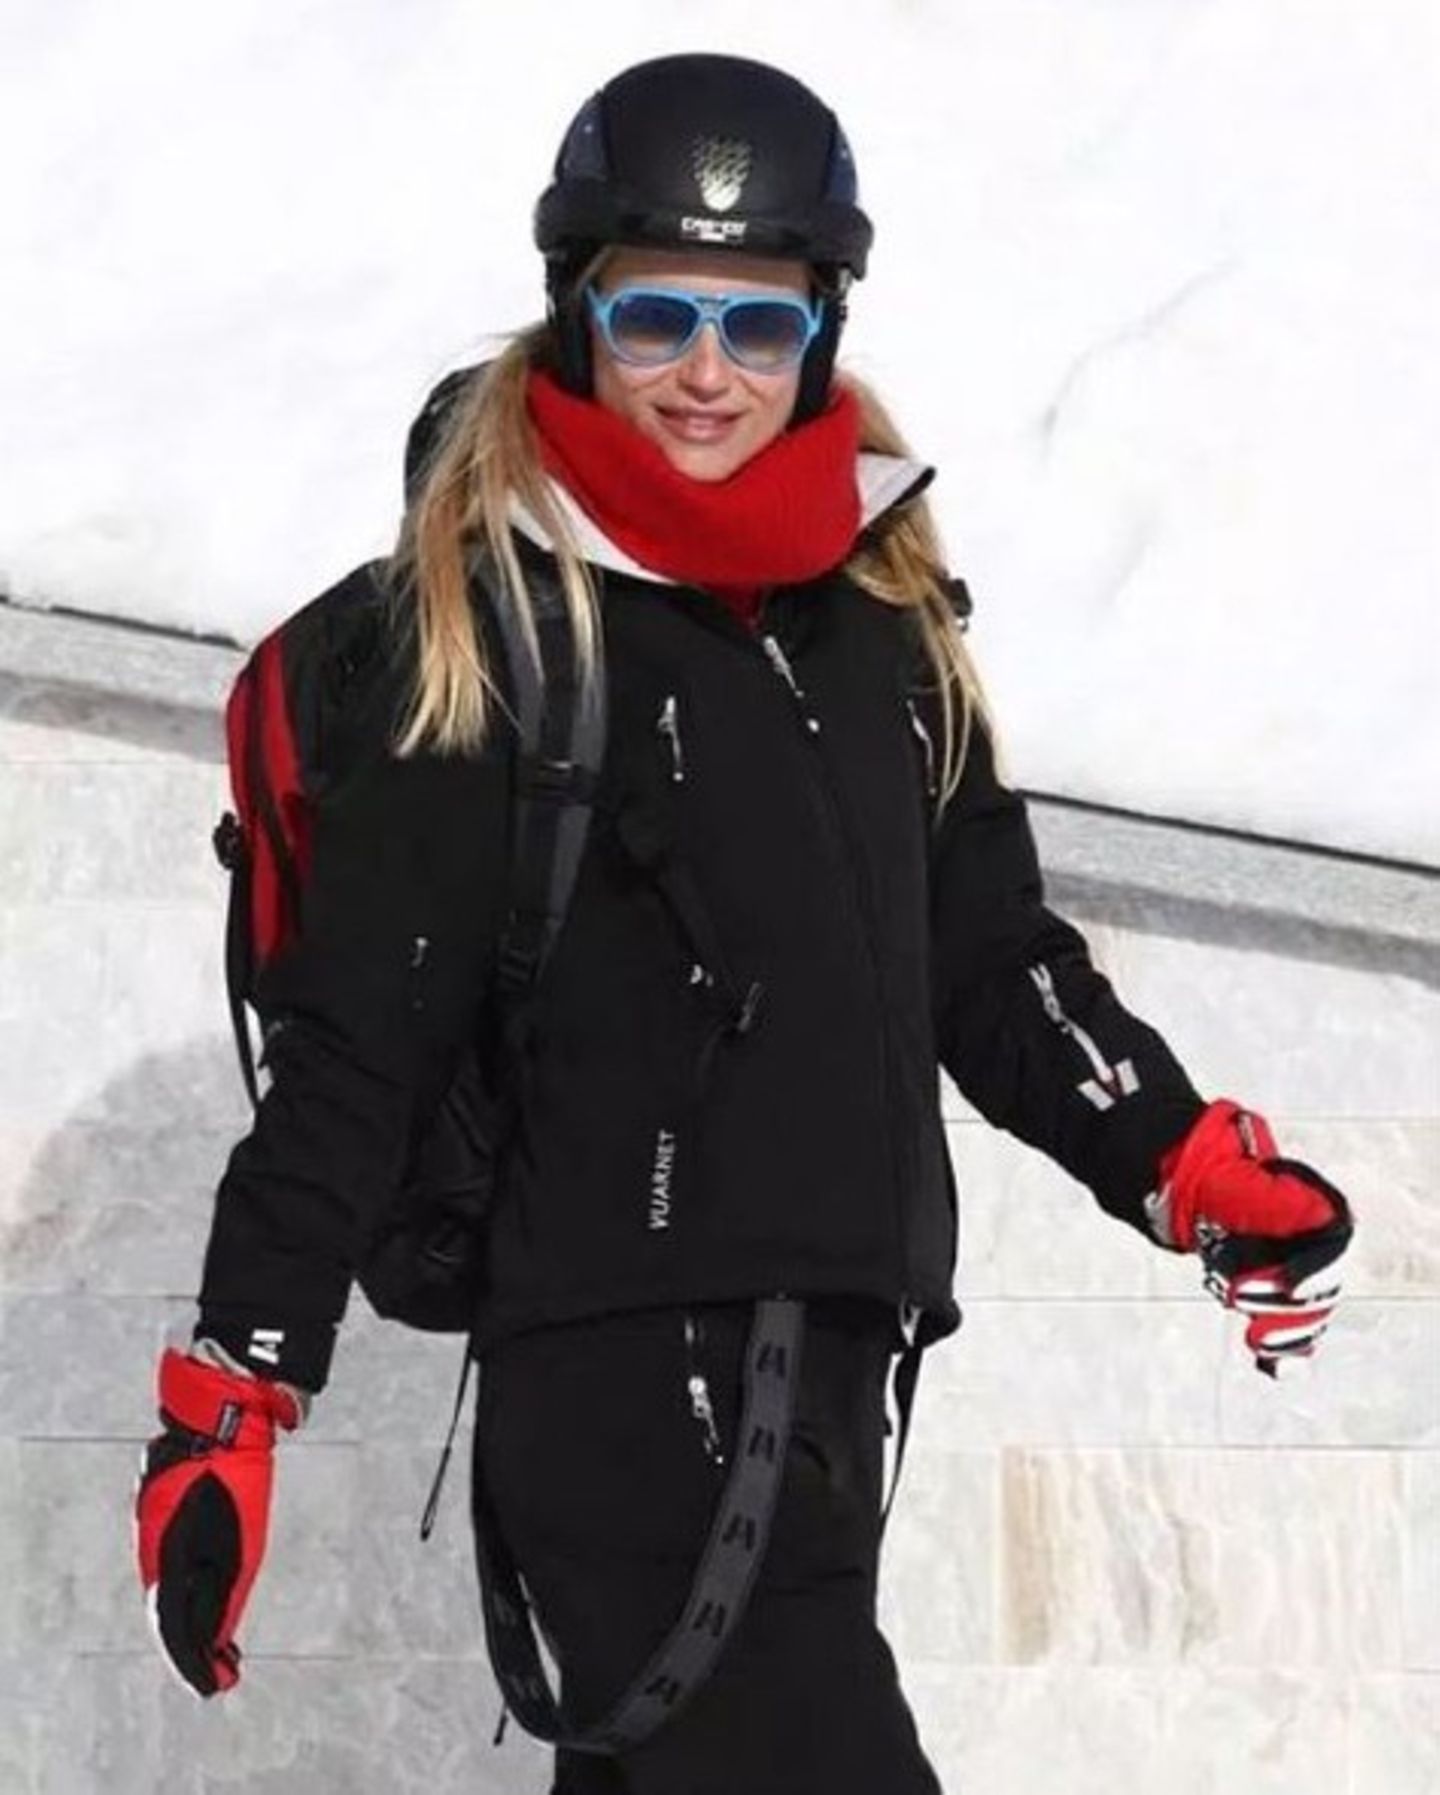 Auch Michelle Hunziker geht mit den Jahreszeiten und genießt den Jahresausklang im Schnee. Skifahren, Schlittschuhlaufen und die Bergsonne sind ihr Programm. Natürlich nicht ohne ihre Familie.